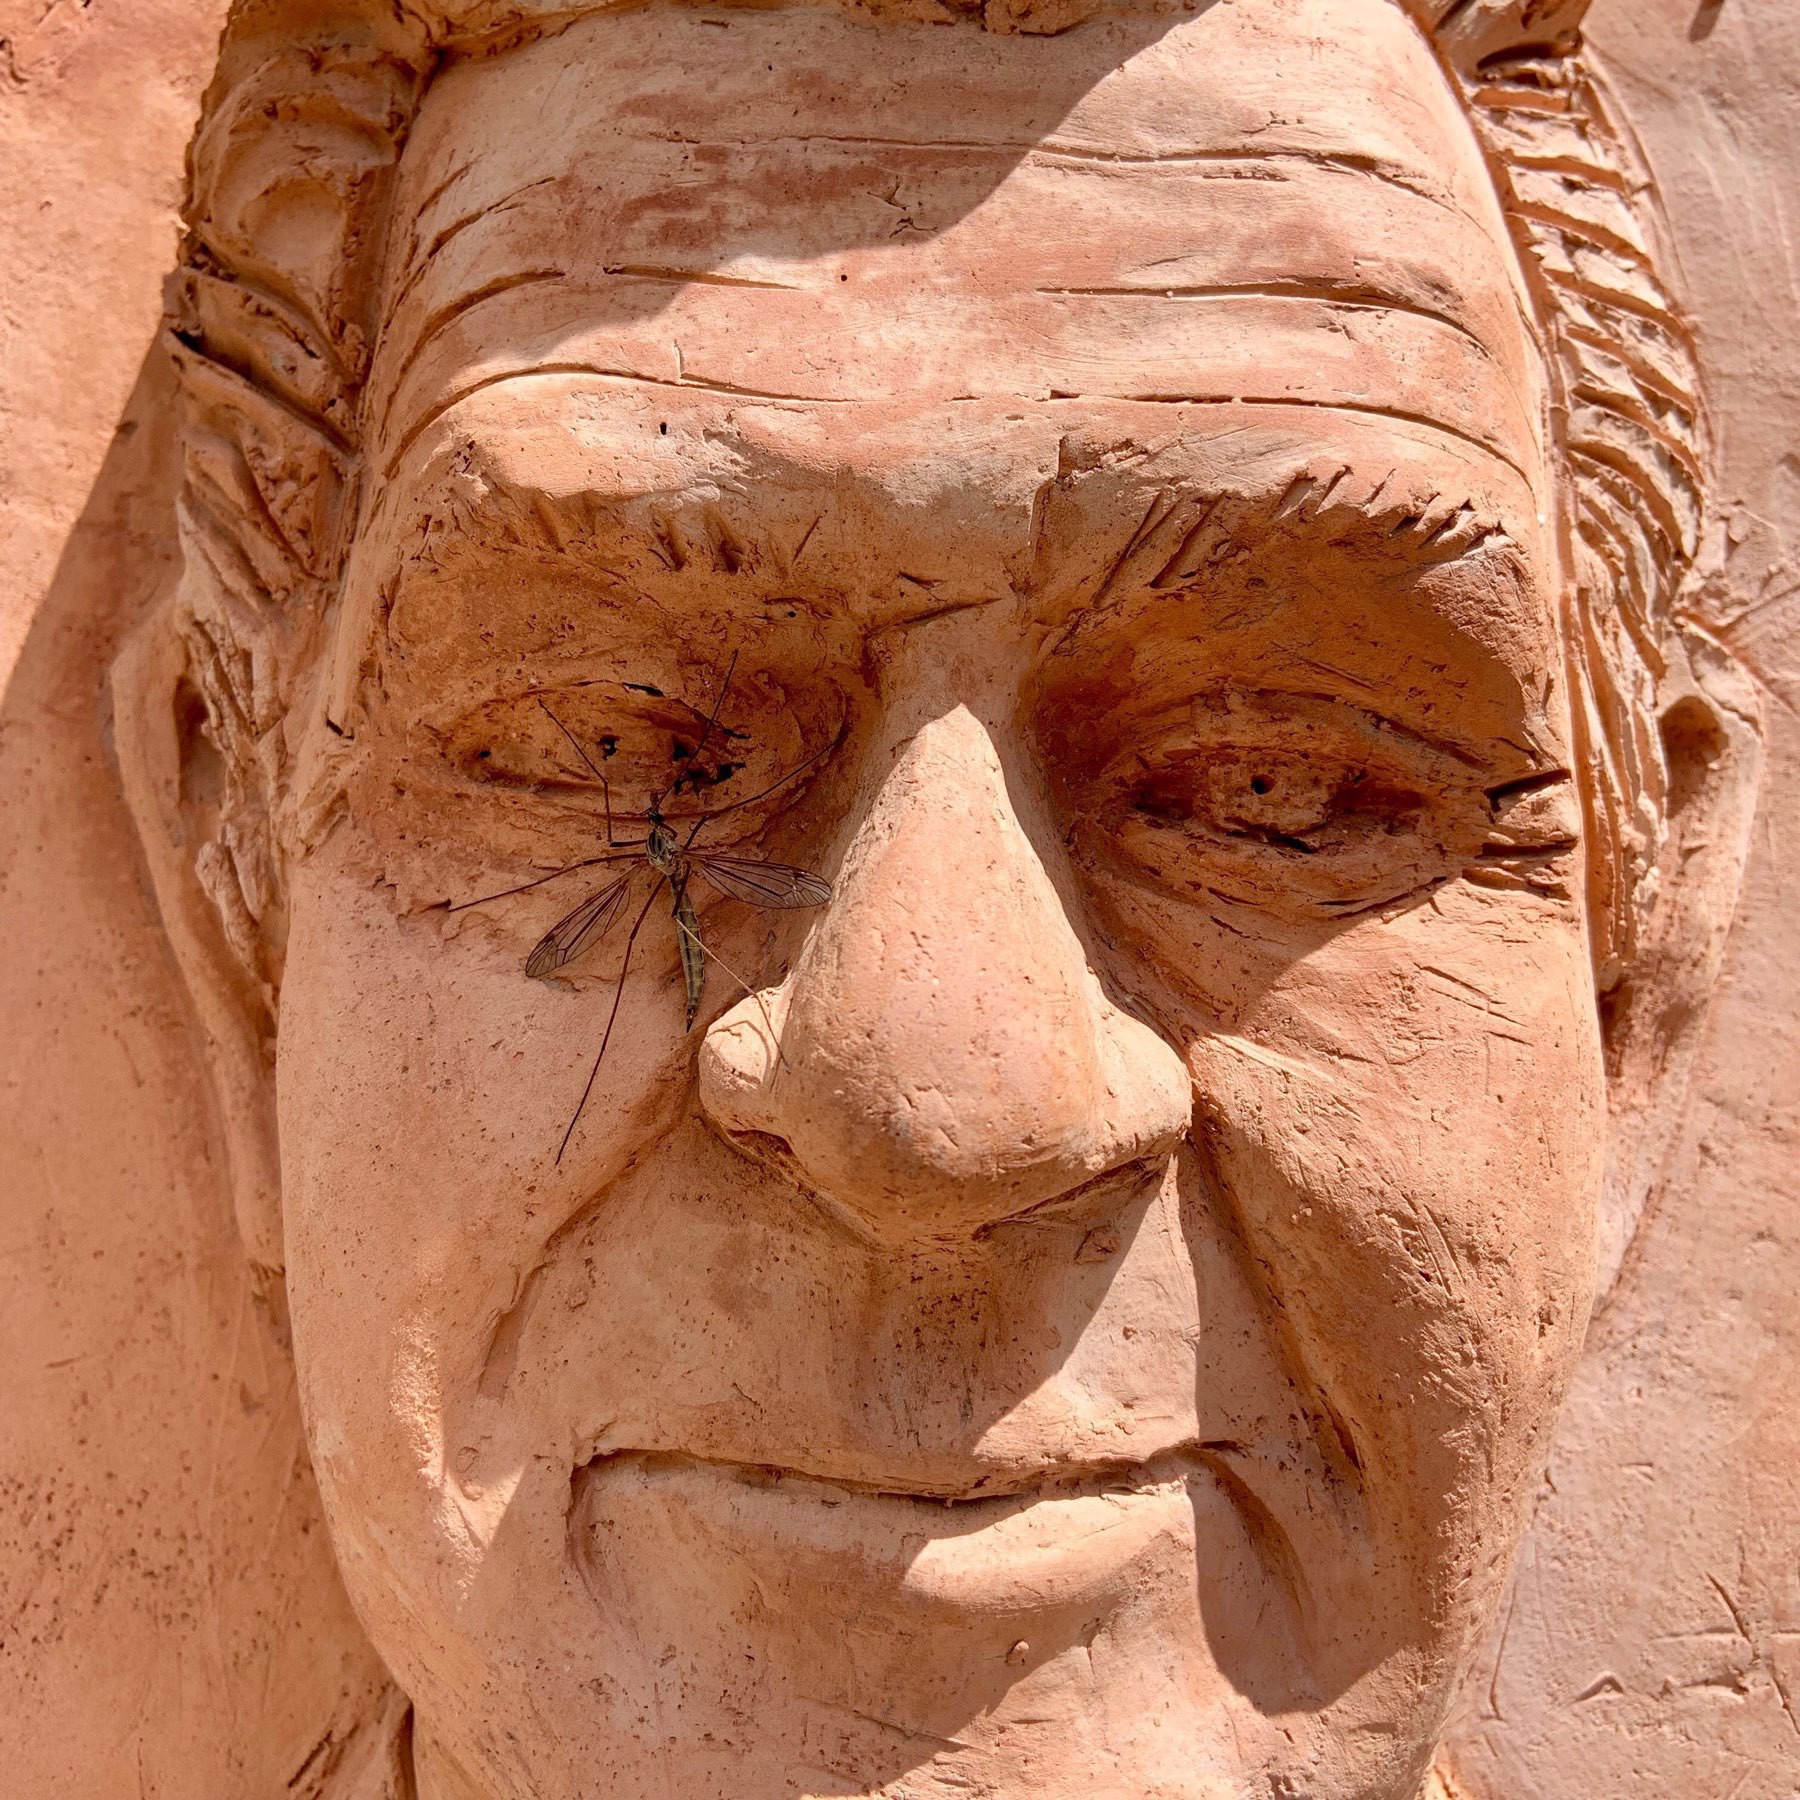 Crane fly on a sculpture of an older man's face